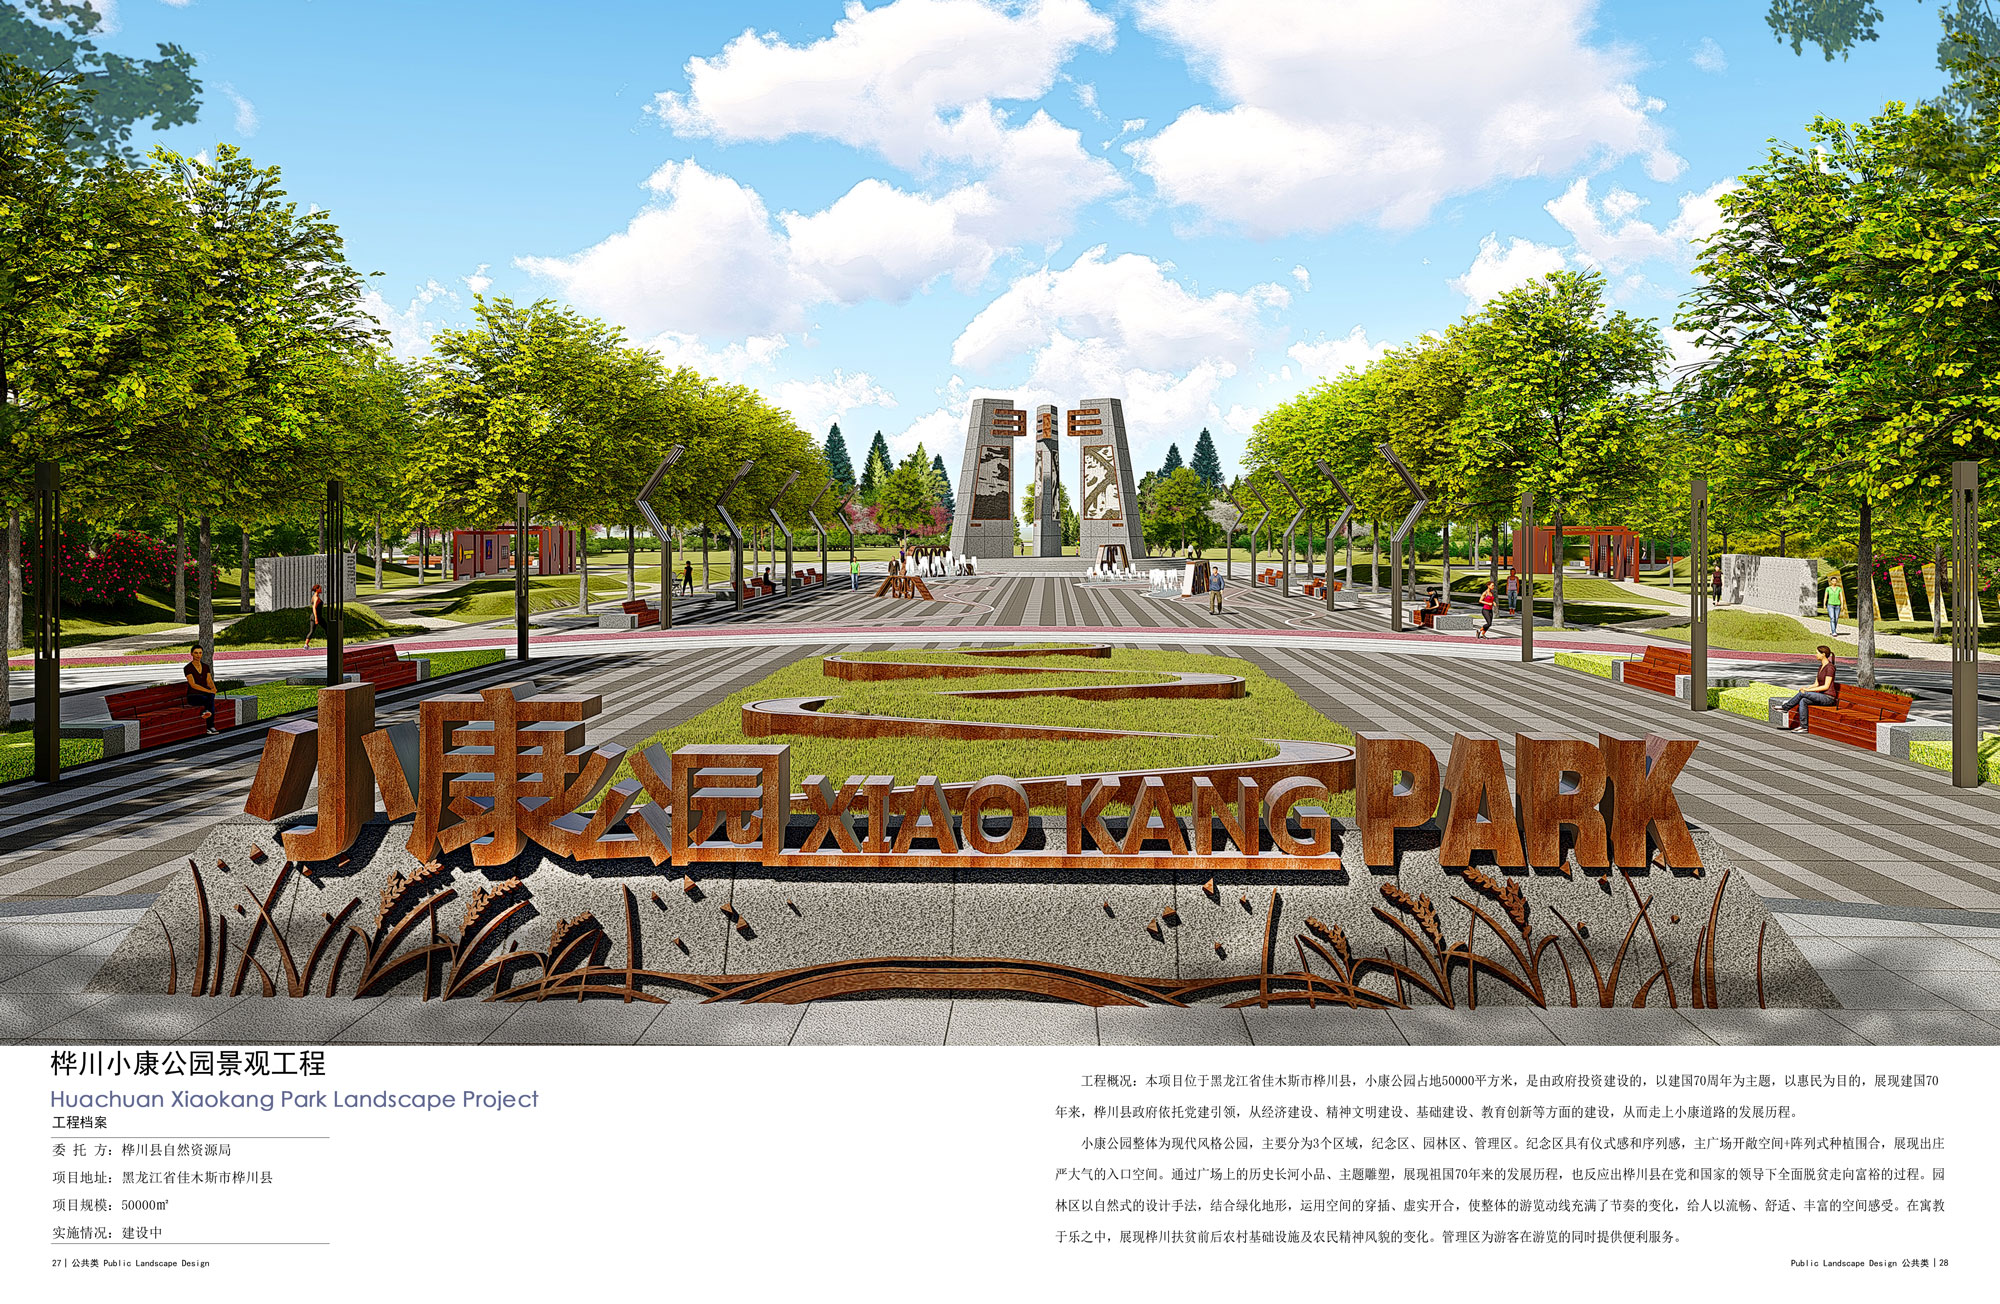 桦川小康公园景观工程